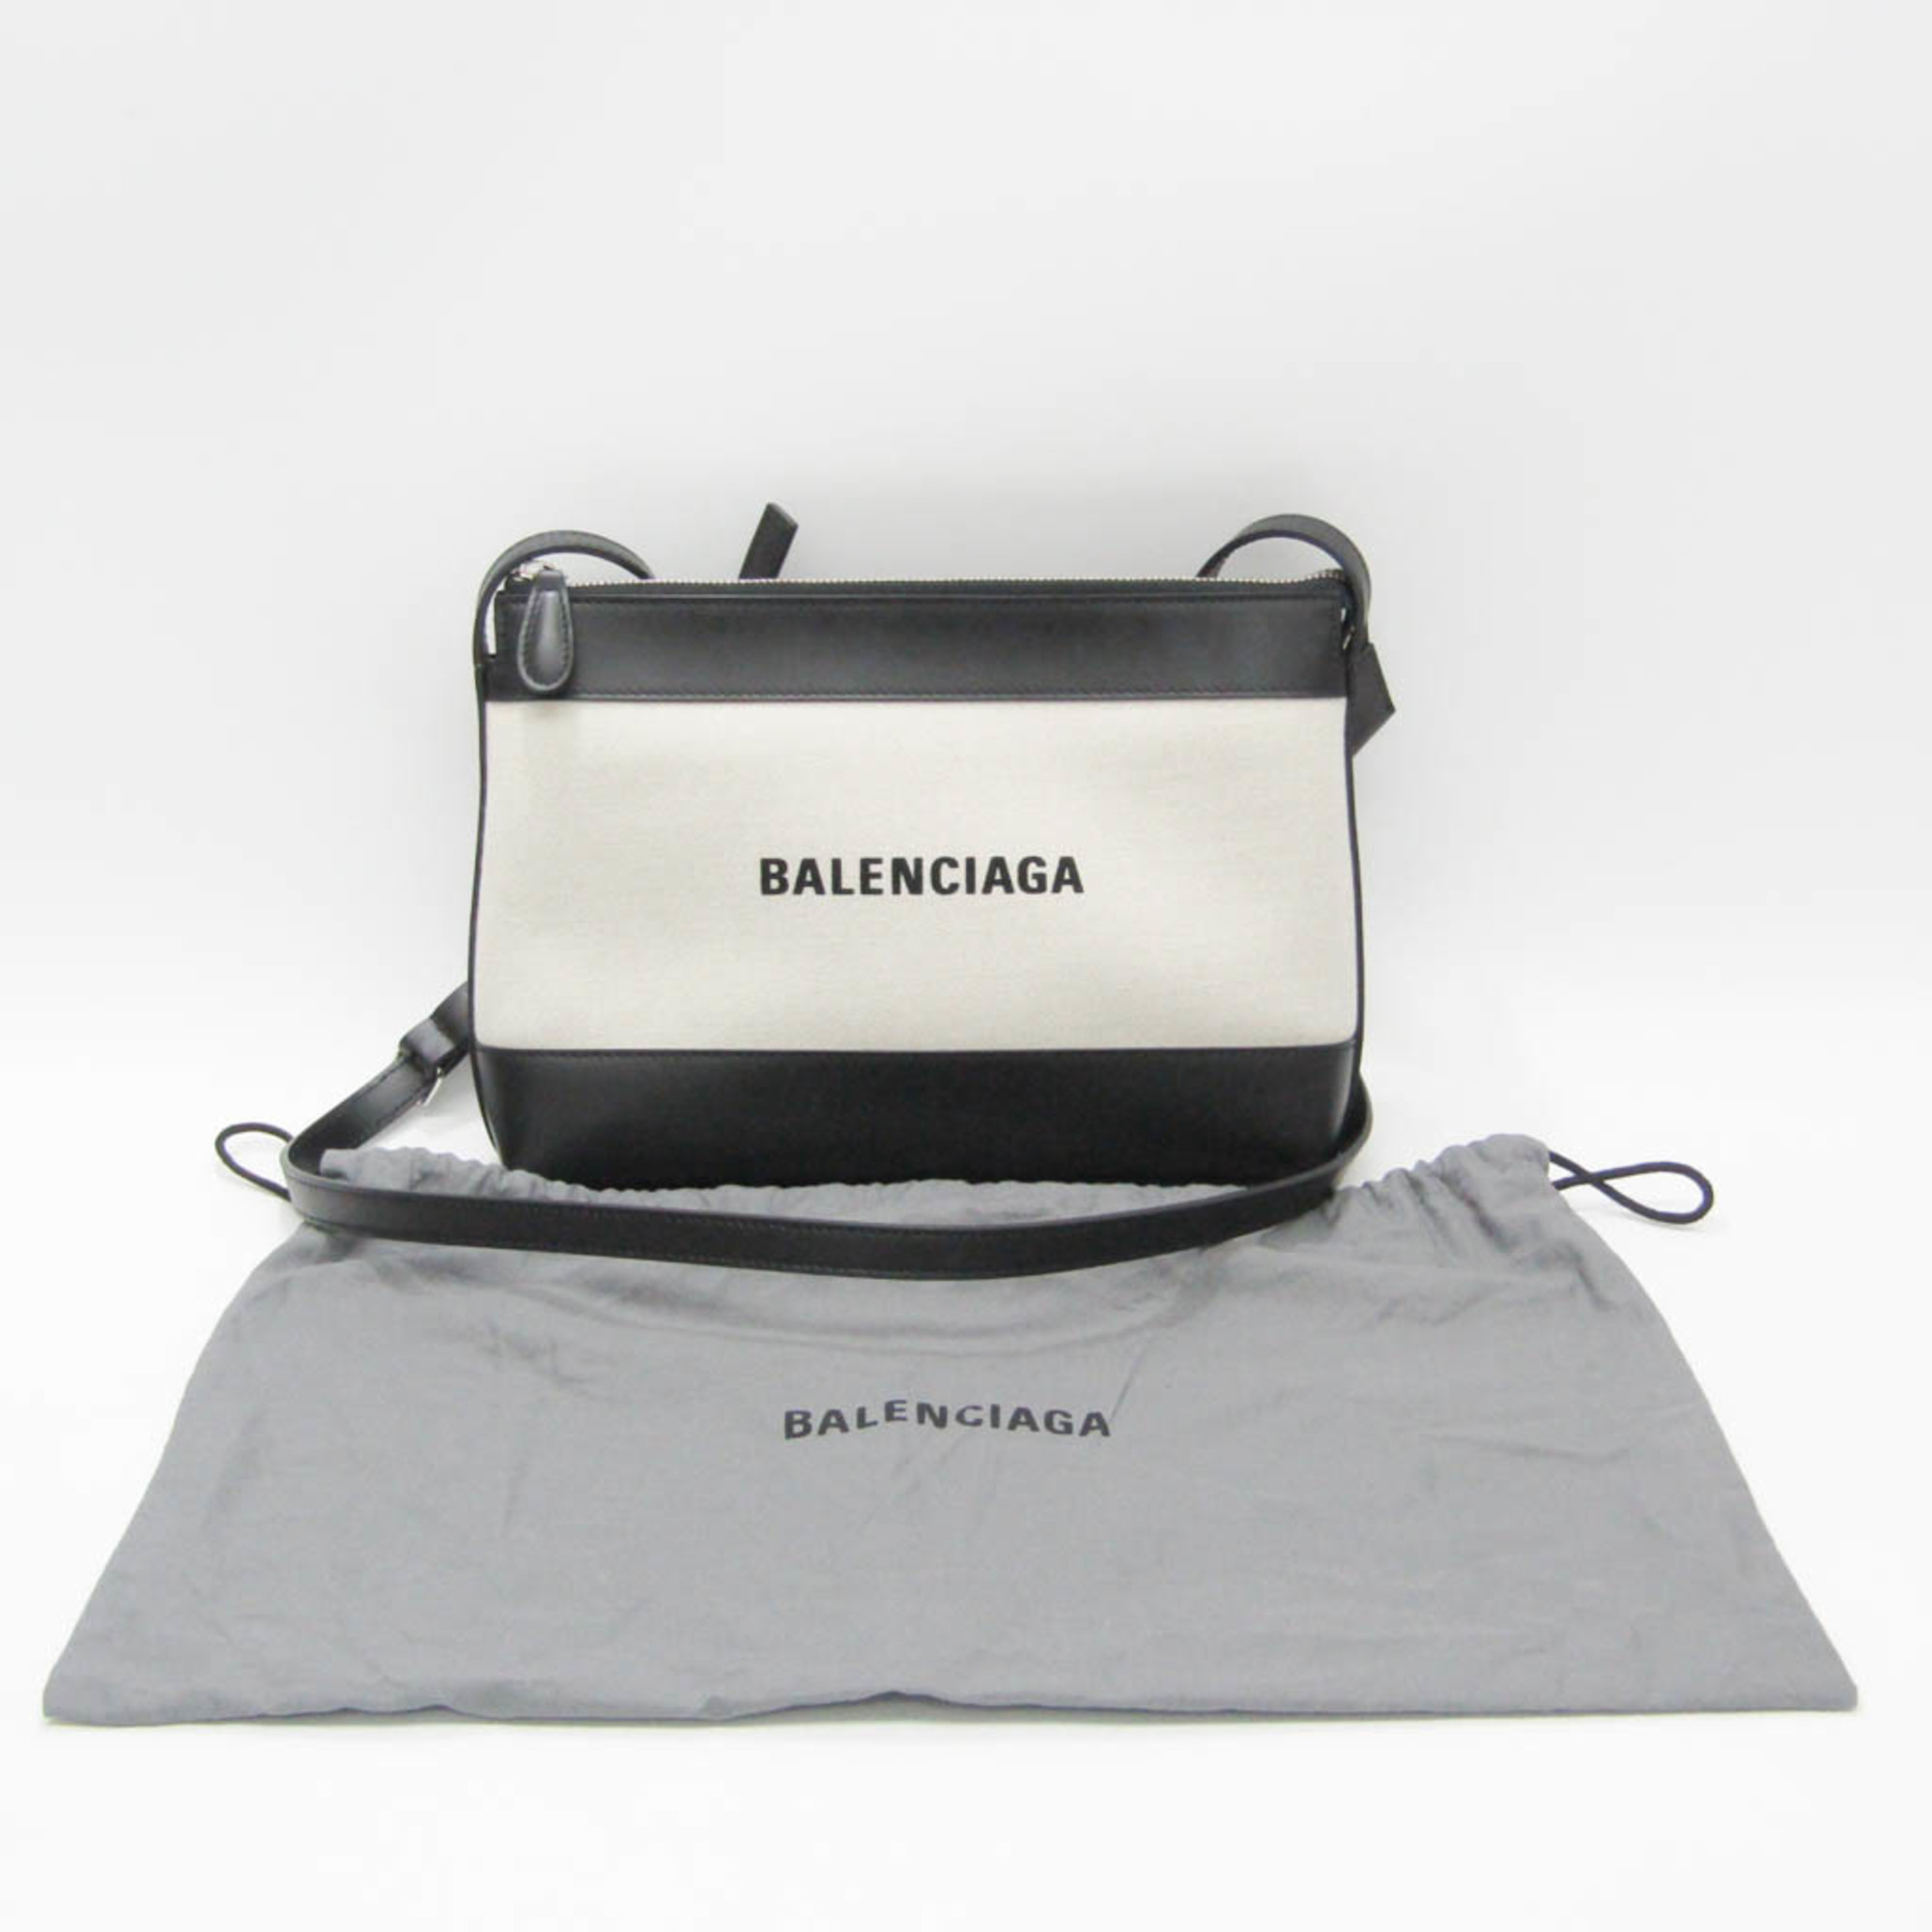 バレンシアガ(Balenciaga) 2948516 レディース キャンバス,レザー ショルダーバッグ ブラック,ライトベージュ